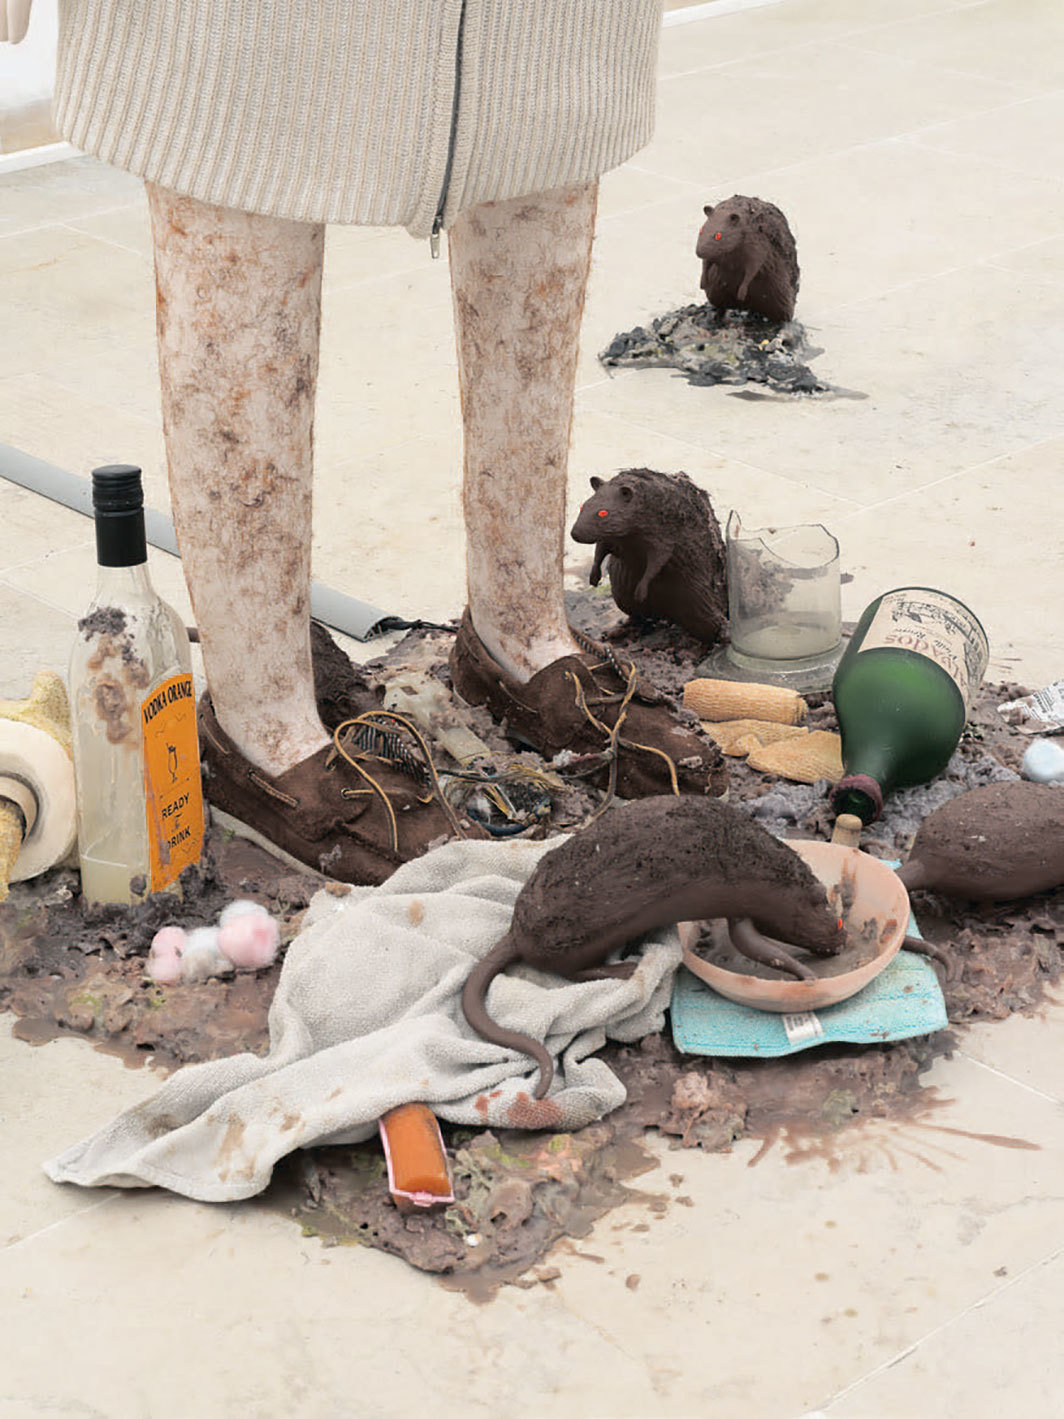 乔斯·德·格鲁伊特和哈拉·尔德，《老鼠女》（局部），2019，混合媒材；展览现场，比利时馆，威尼斯；第58届威尼斯双年展；摄影：Nick Ash.